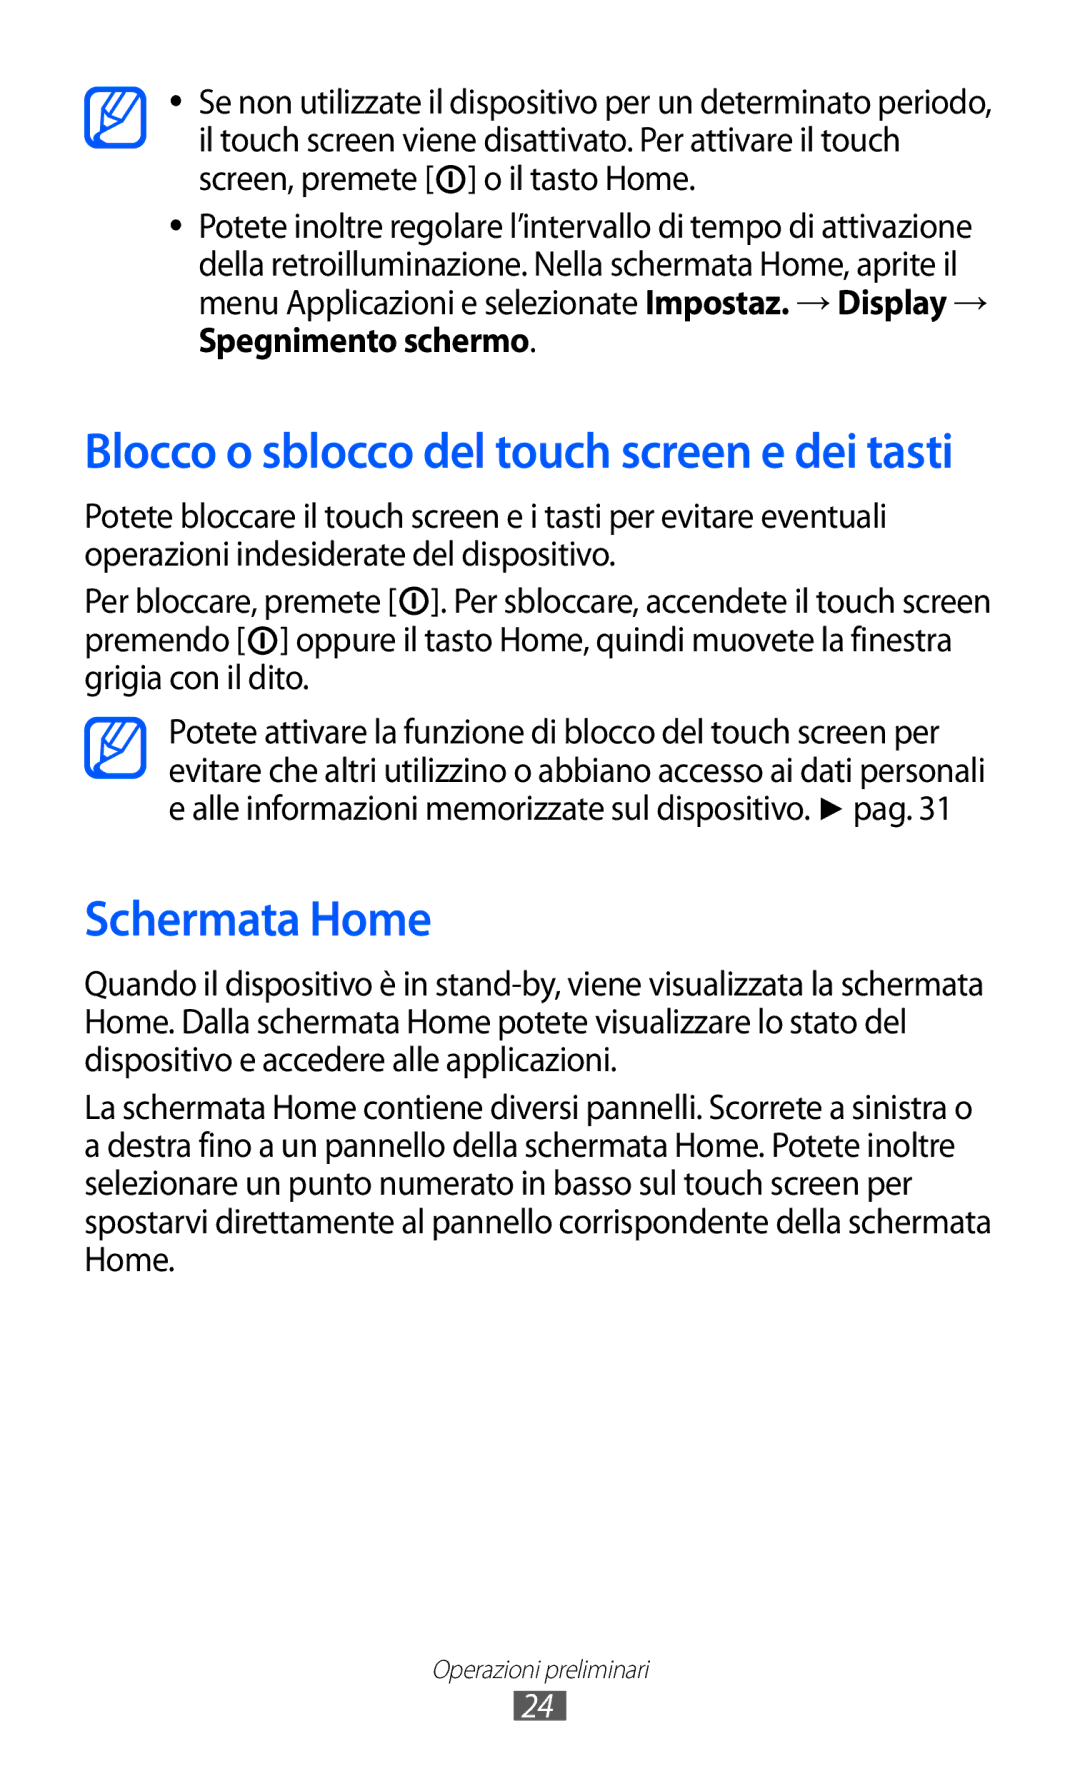 Samsung GT-I8150EWAITV, GT-I8150FKAITV manual Schermata Home, Blocco o sblocco del touch screen e dei tasti 